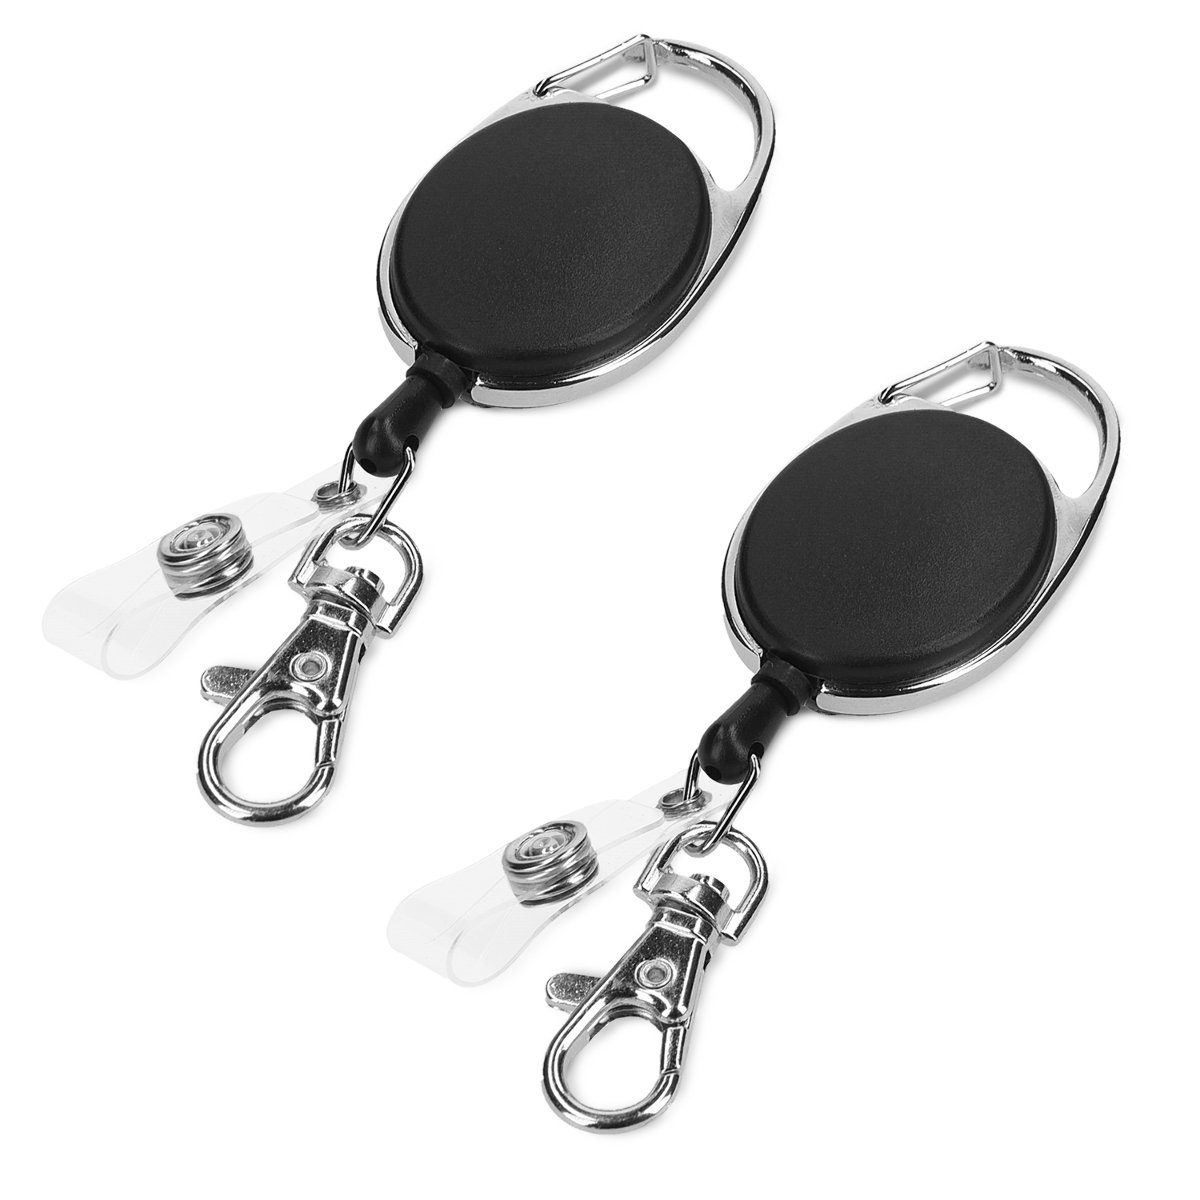 Karabiner Schlüsselanhänger mit Schlüsselring Style 1 silber schwarz Neu Top WoW 